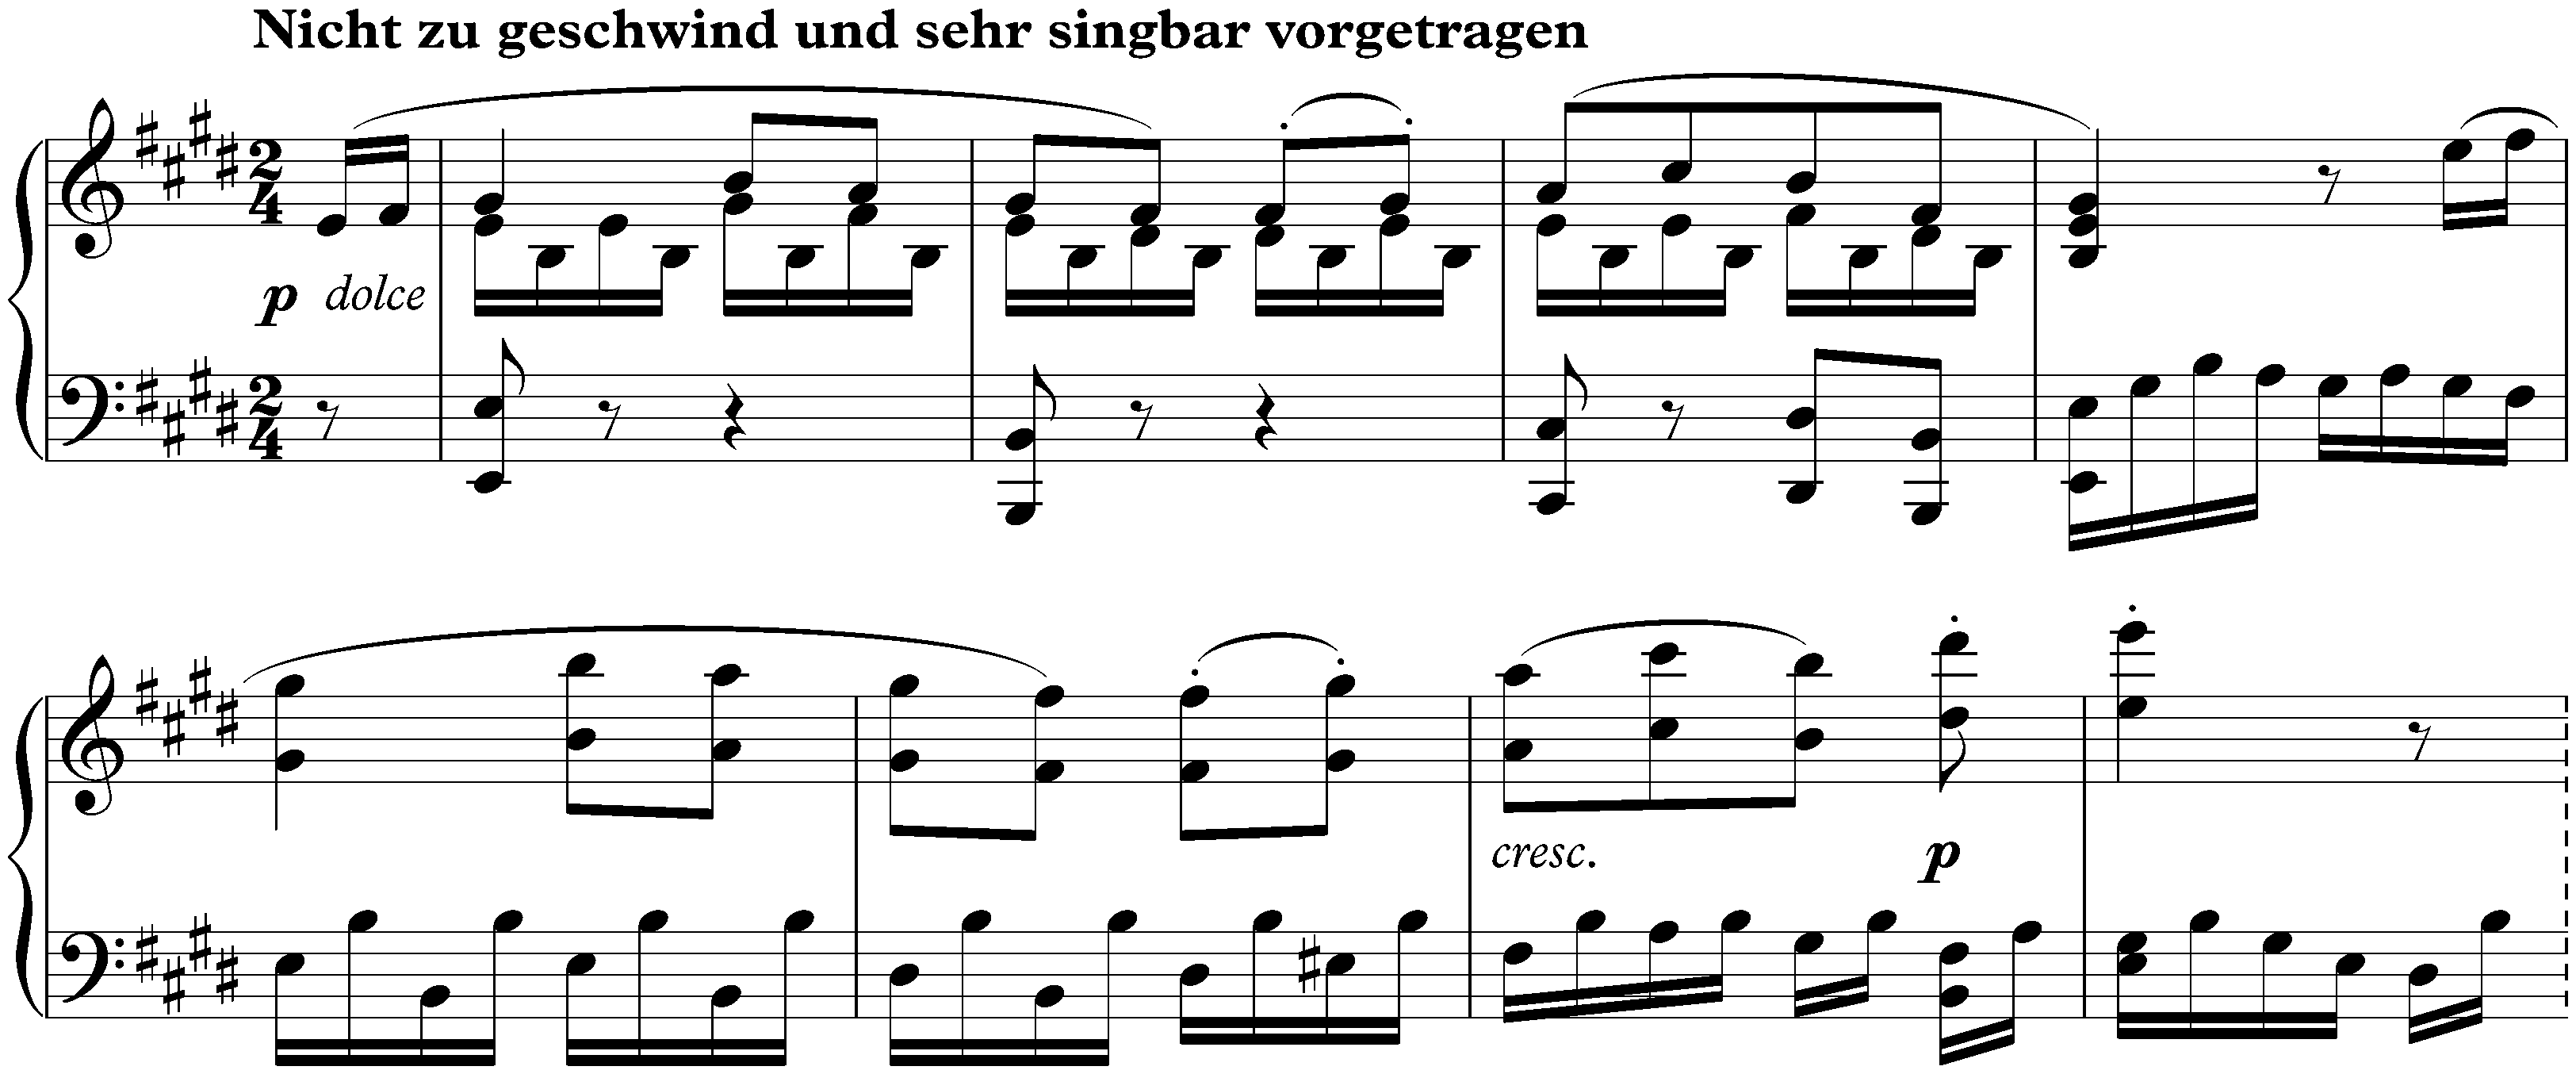 Sonata no. 27 in E minor, op. 90; 2. Nicht zu geschwind und sehr singbar vorgetragen